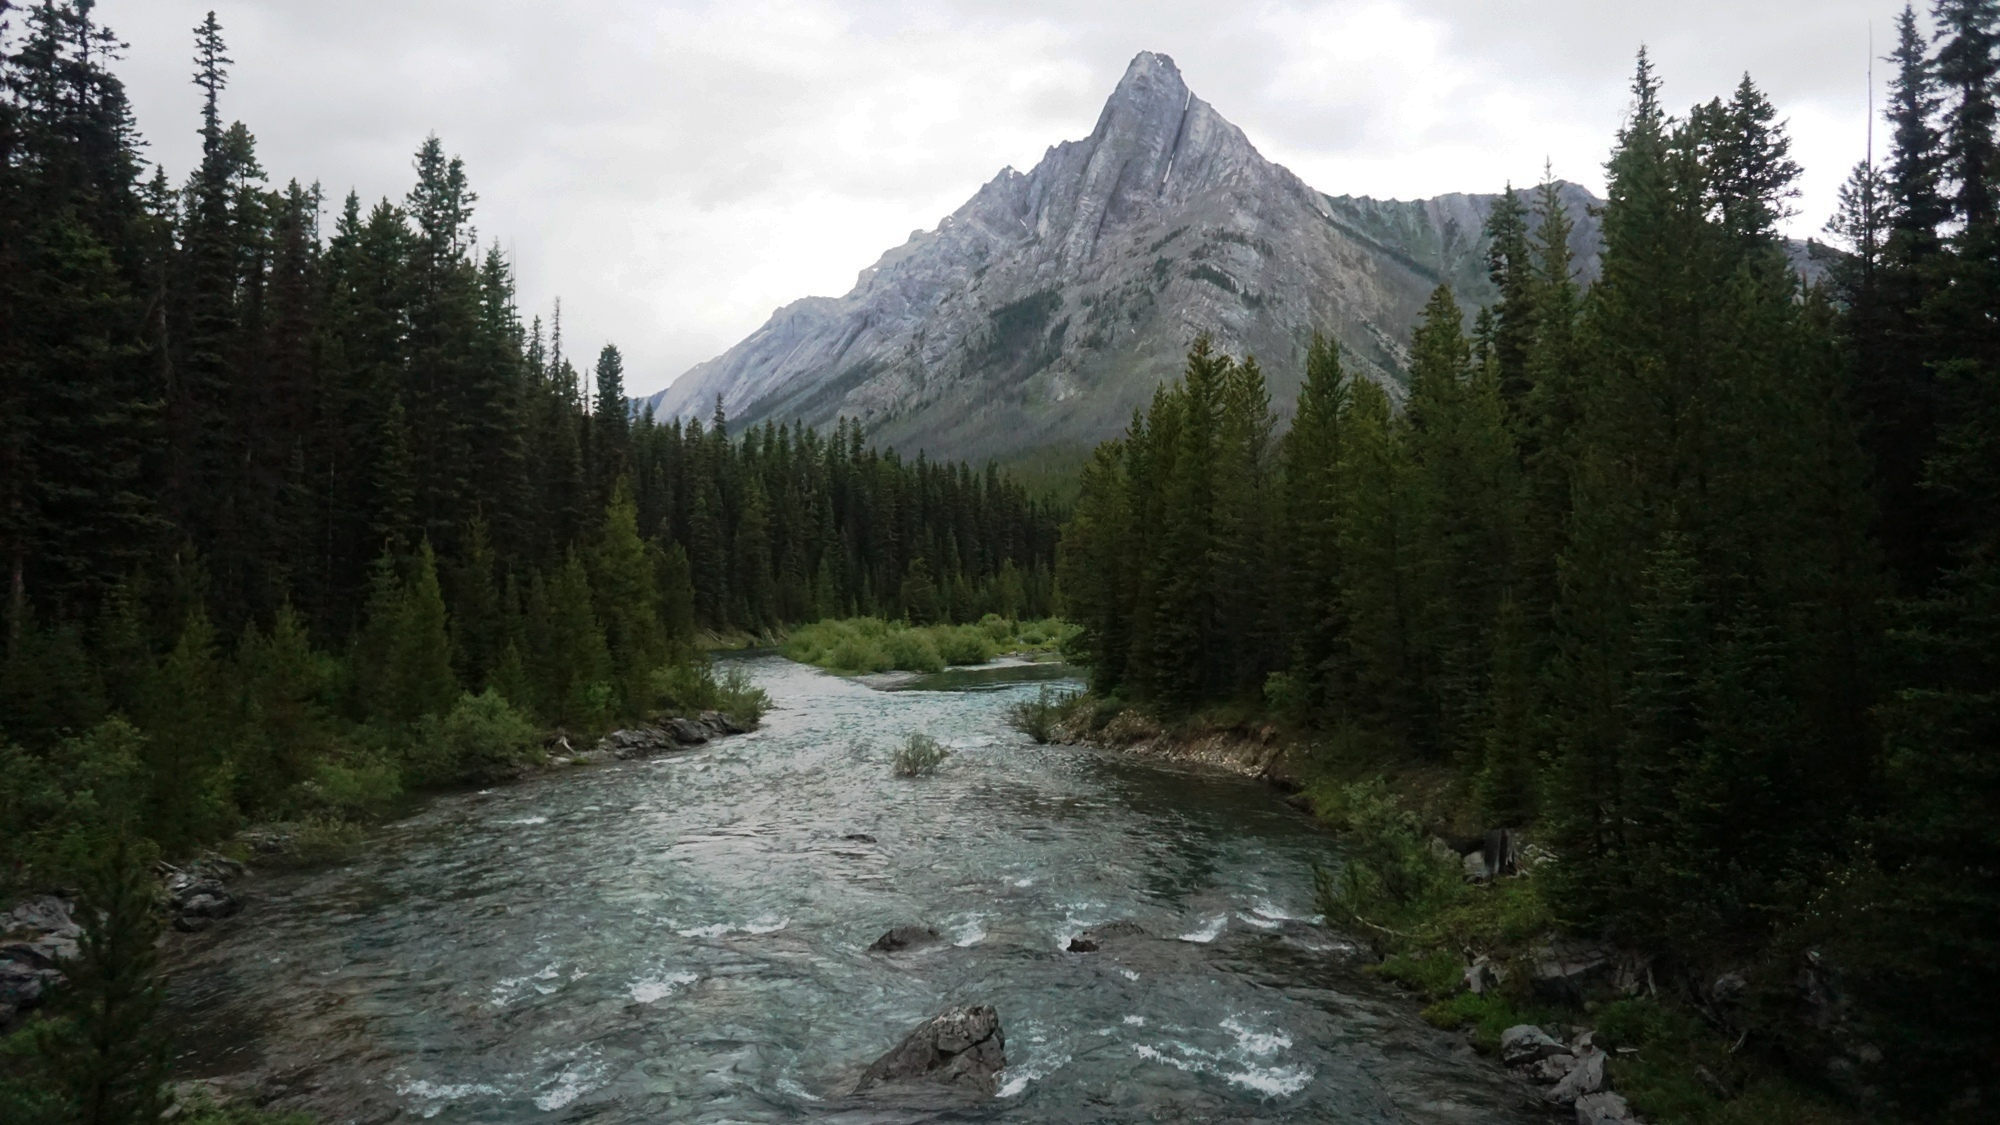 Der Spray River mit dem Cone Mountain in den Kanadischen Rockies.